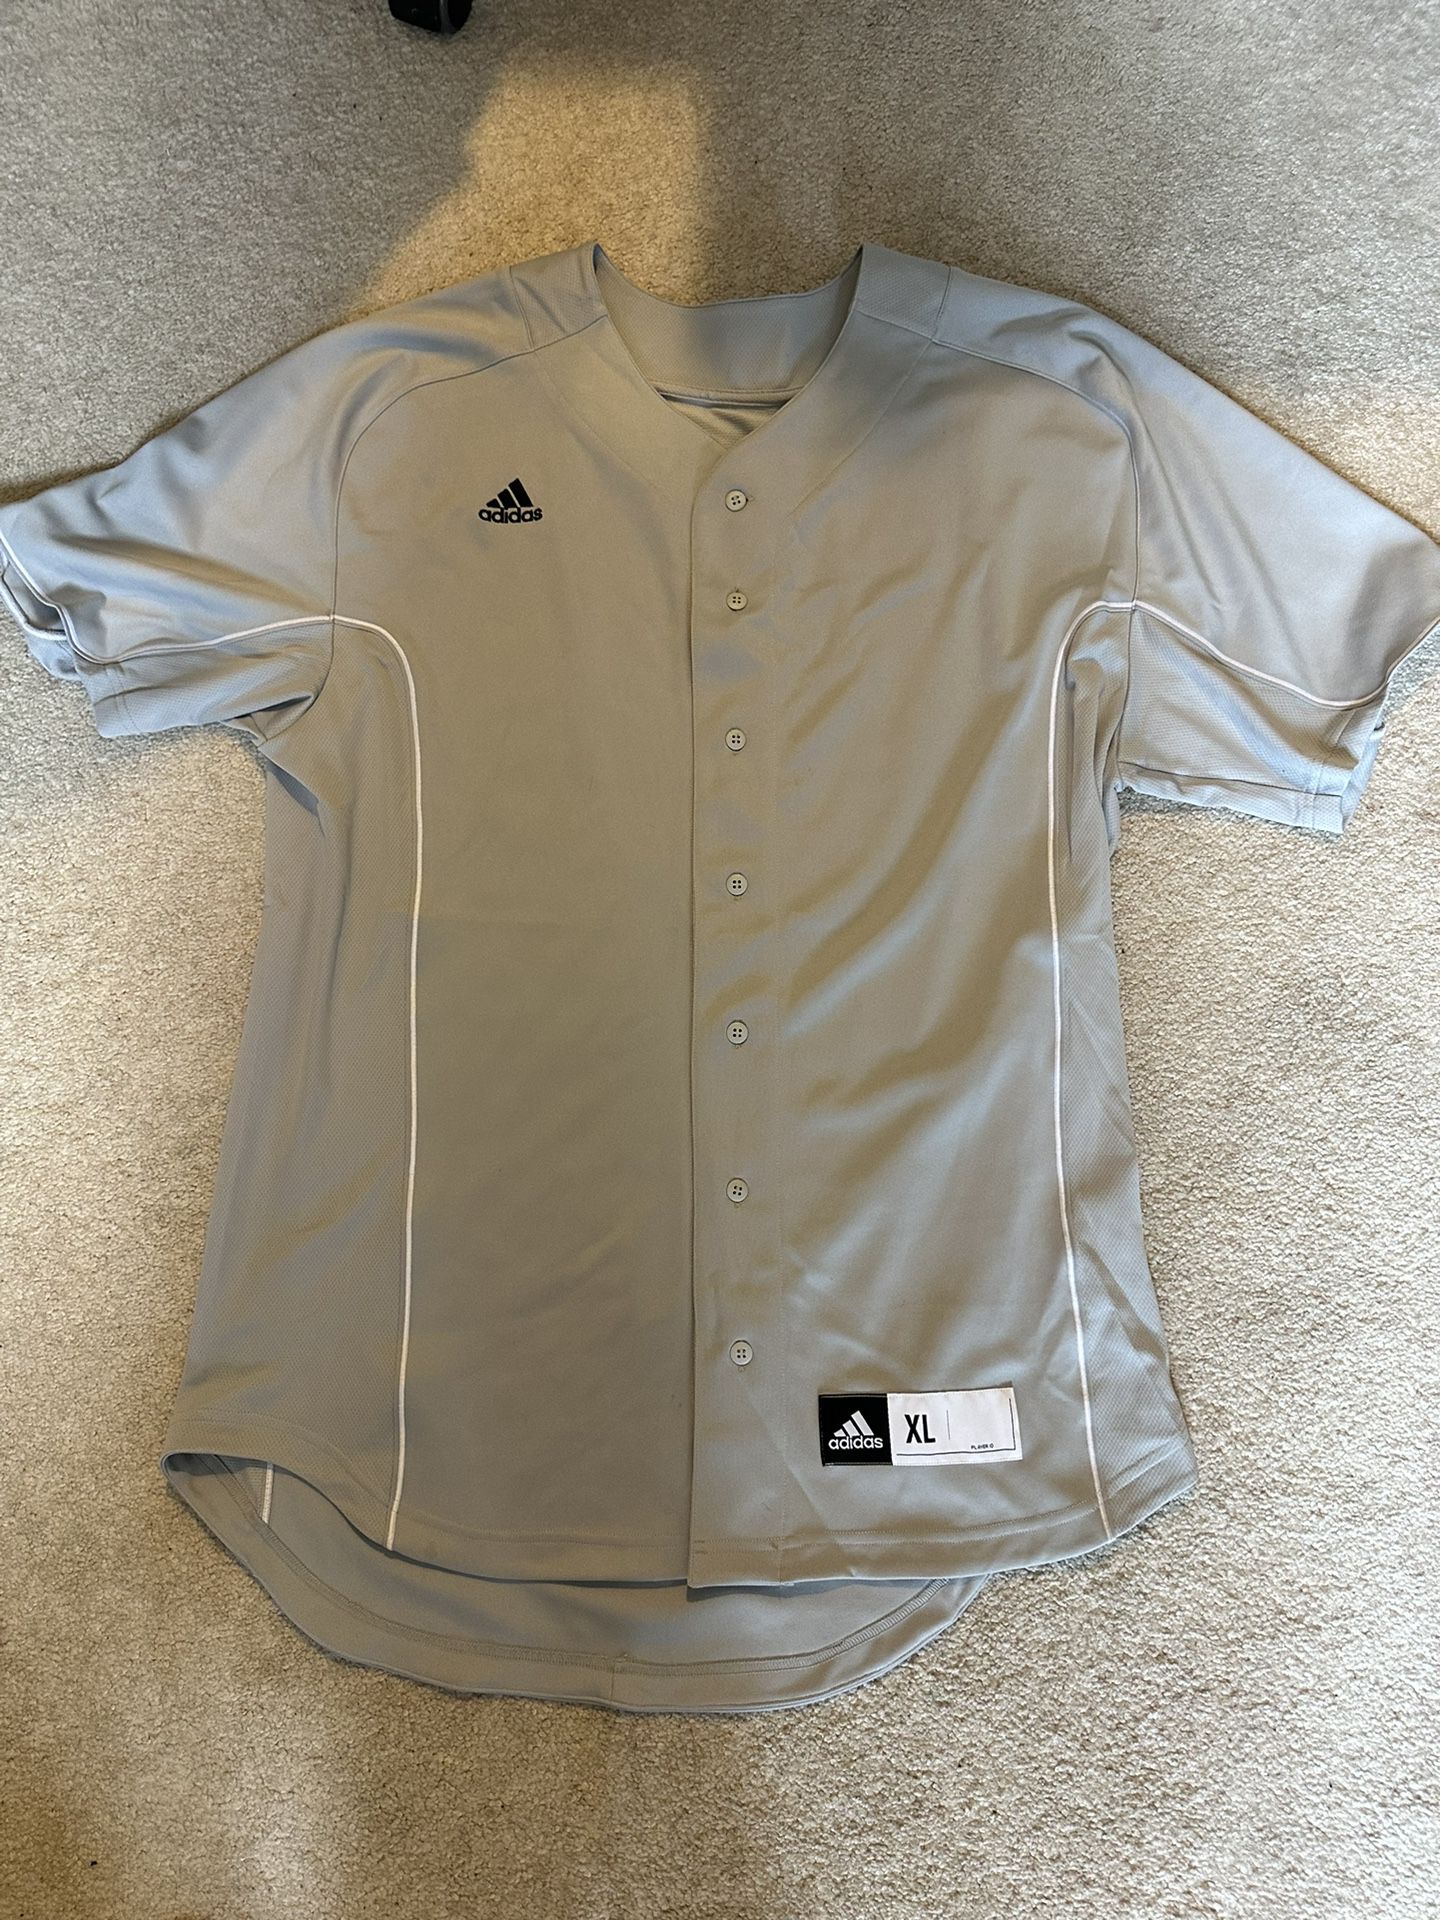 Adidas Baseball Jersey XL